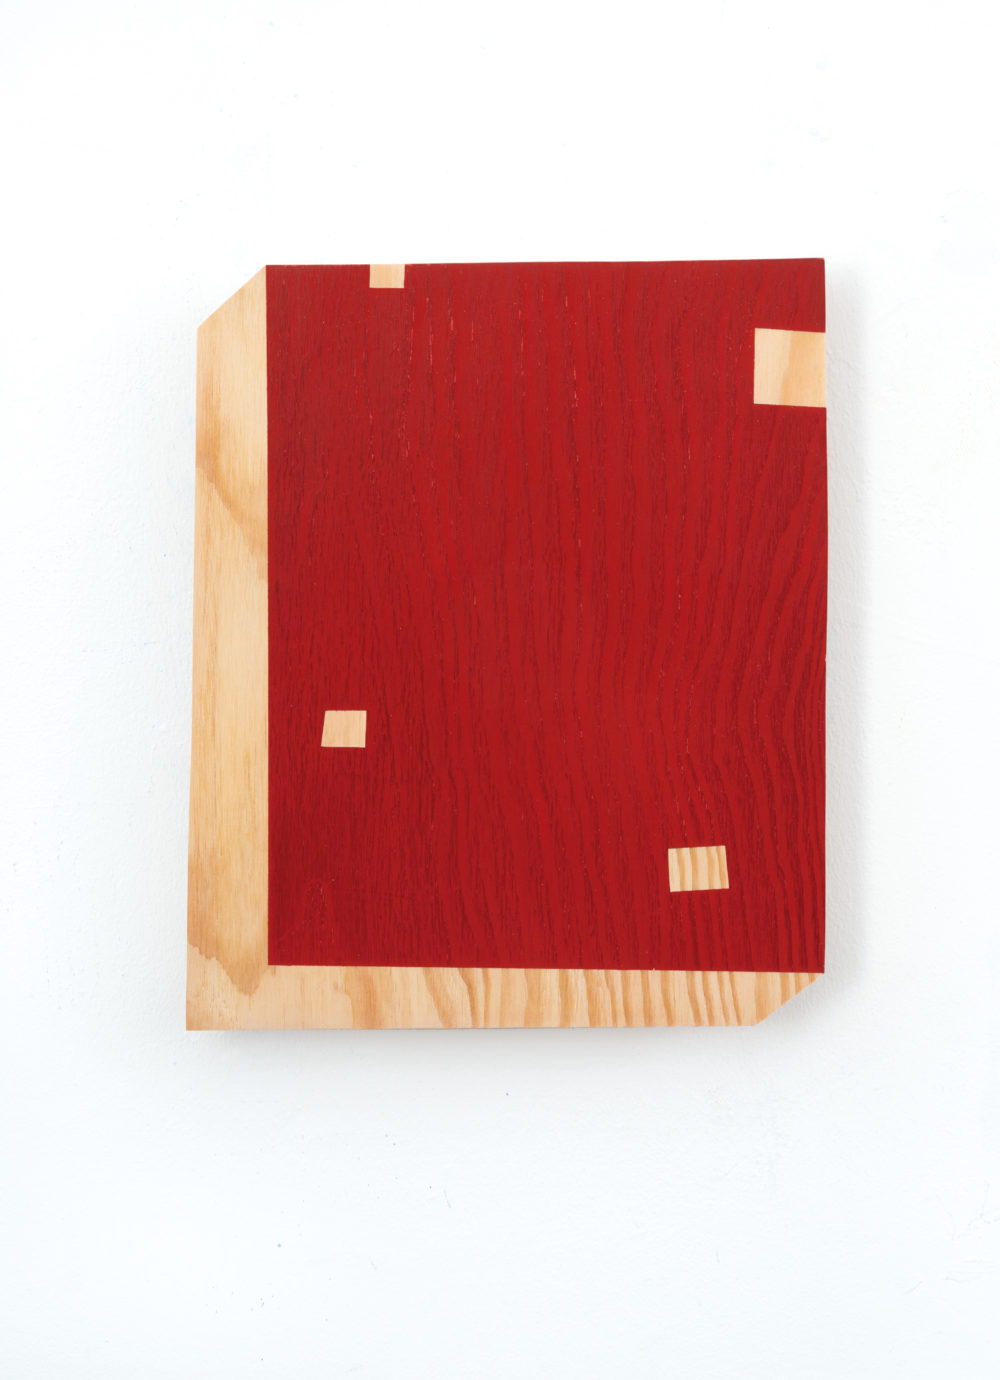 doublebind1, 2019, Acryl/Holz, 33 x 27,5 x 2 cm © VG Bild-Kunst Bonn, 2023/Doris Erbacher, Foto: Dorothea Burkhardt